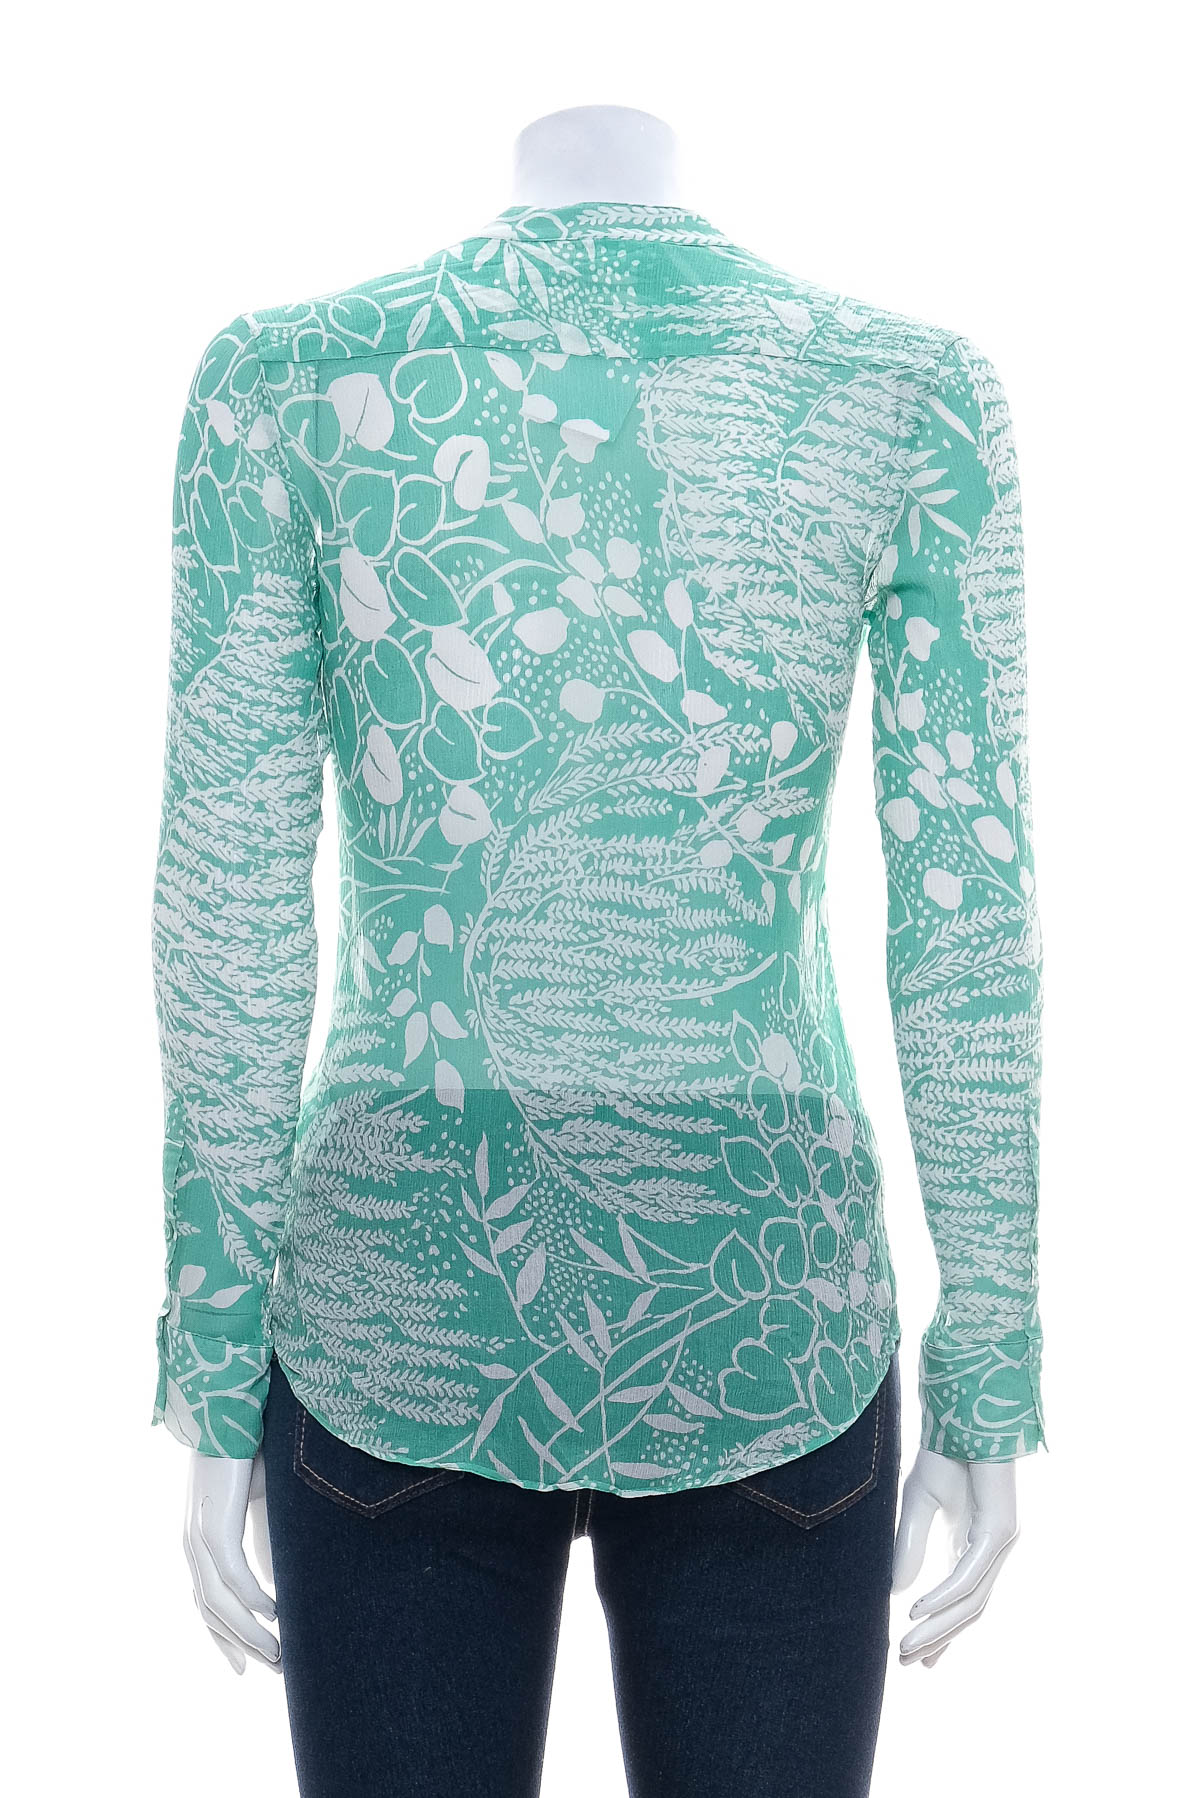 Γυναικείо πουκάμισο - H&M Spring Collection 2014 - 1